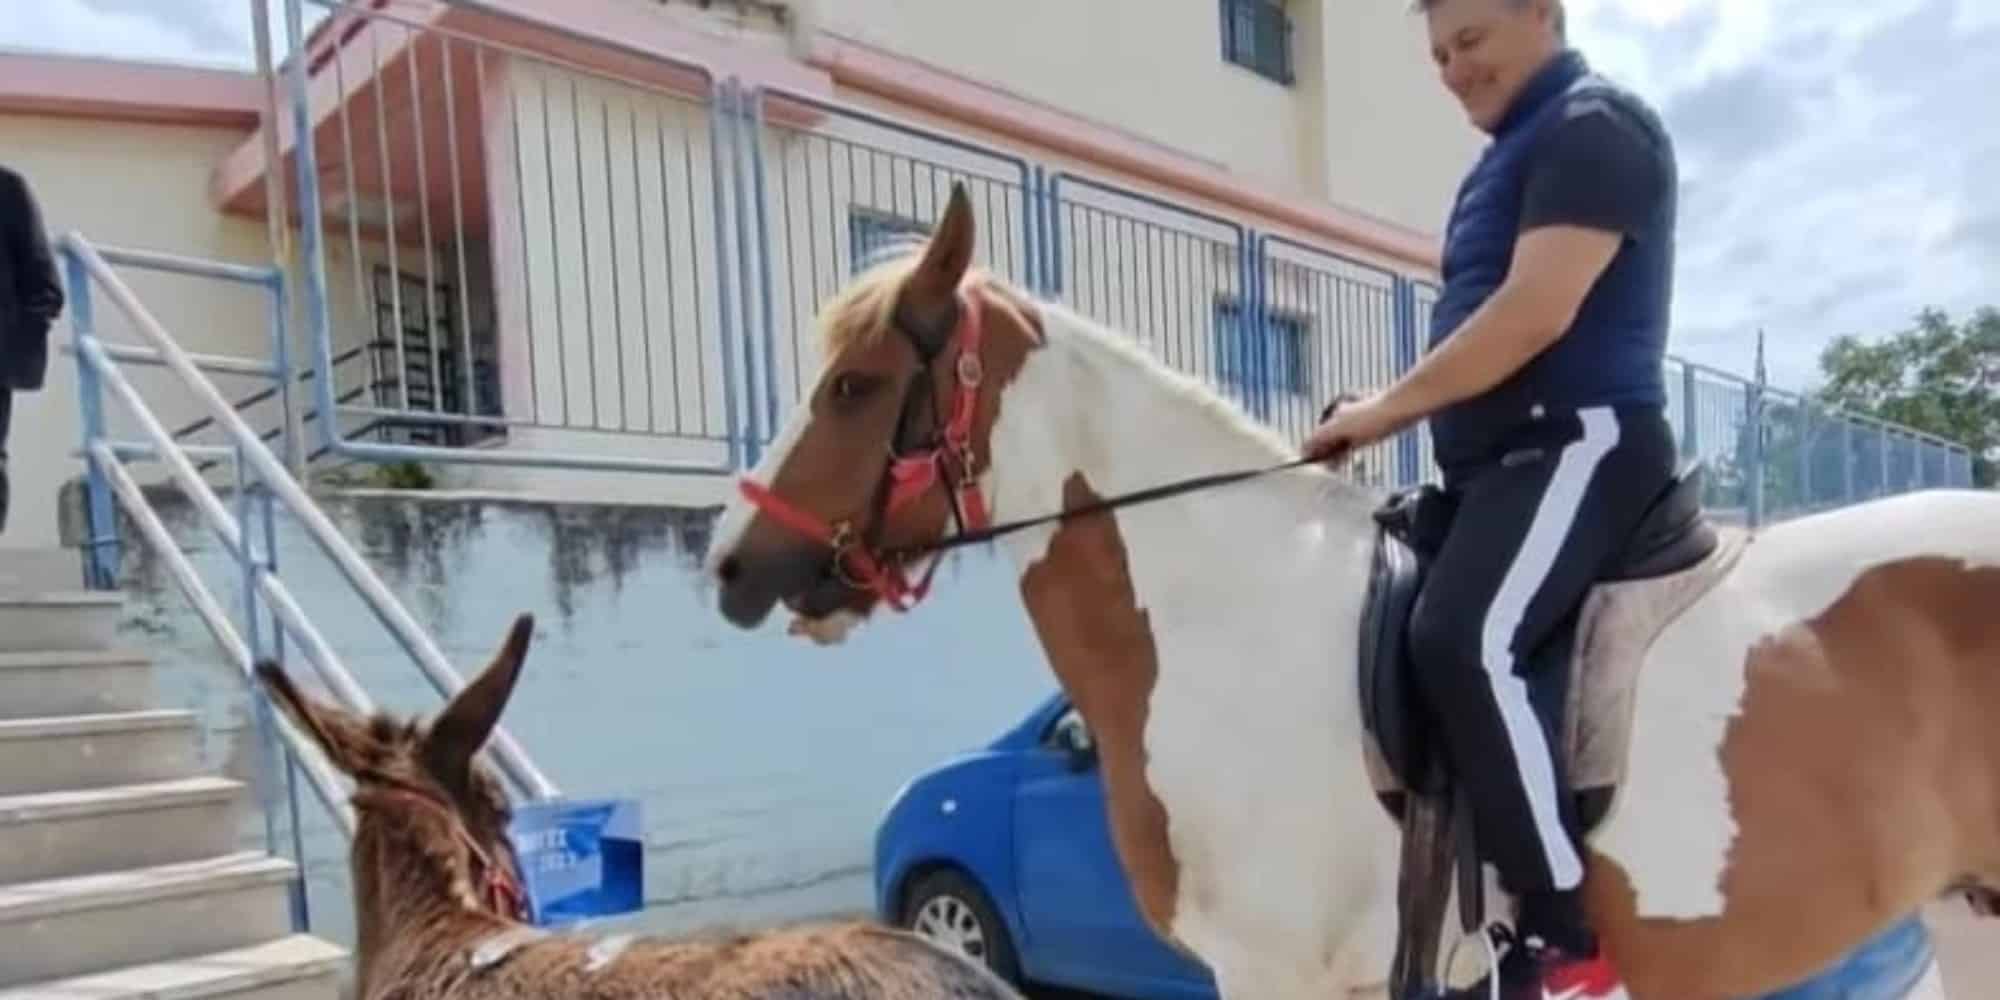 Ο αγρότης πήγε με το άλογο να ψηφίσει